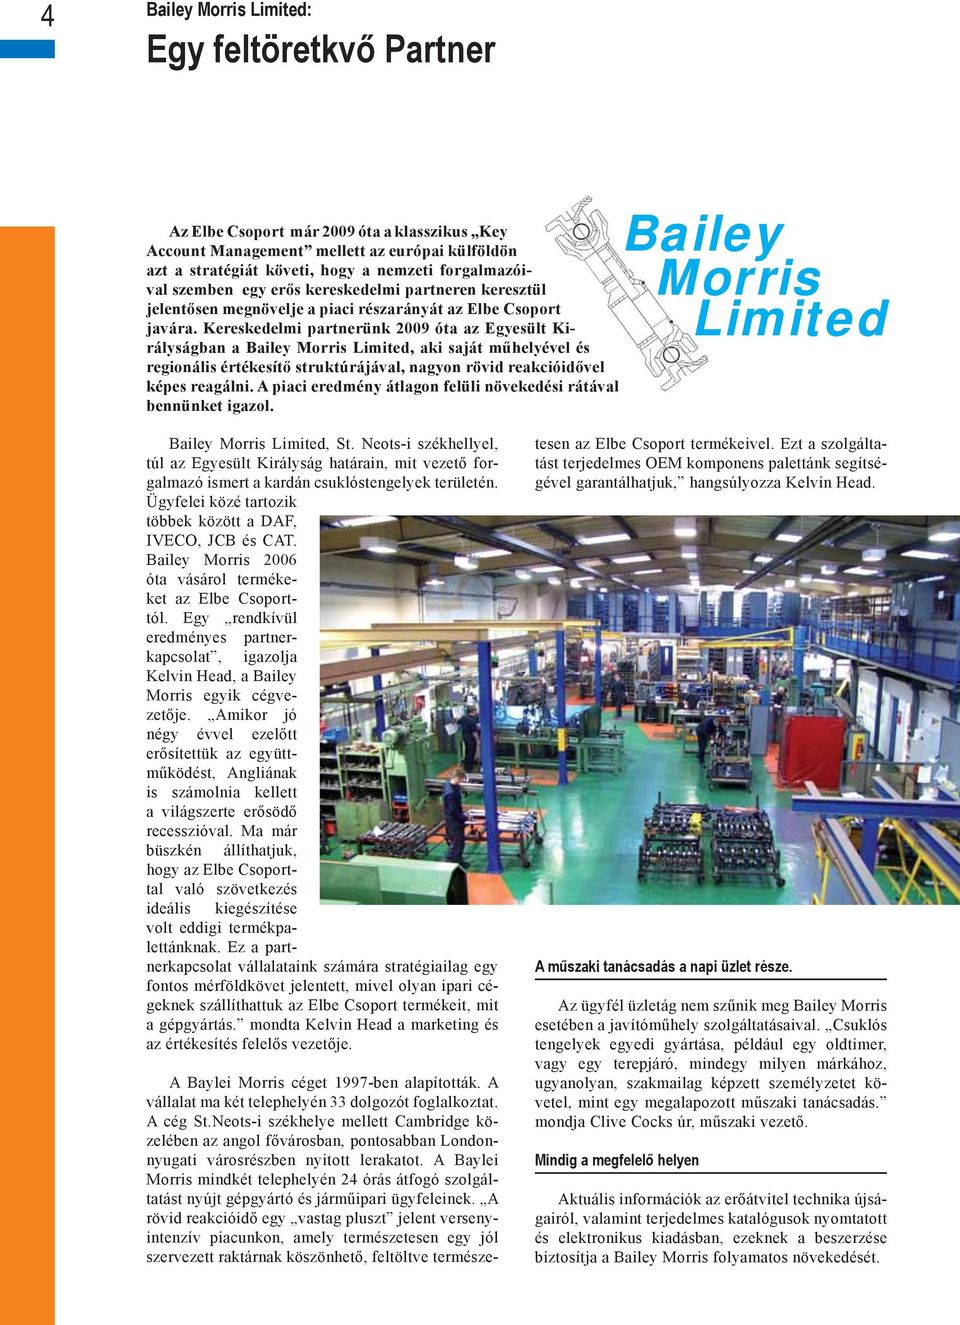 Kereskedelmi partnerünk 2009 óta az Egyesült Királyságban a Bailey Morris Limited, aki saját műhelyével és regionális értékesítő struktúrájával, nagyon rövid reakcióidővel képes reagálni.